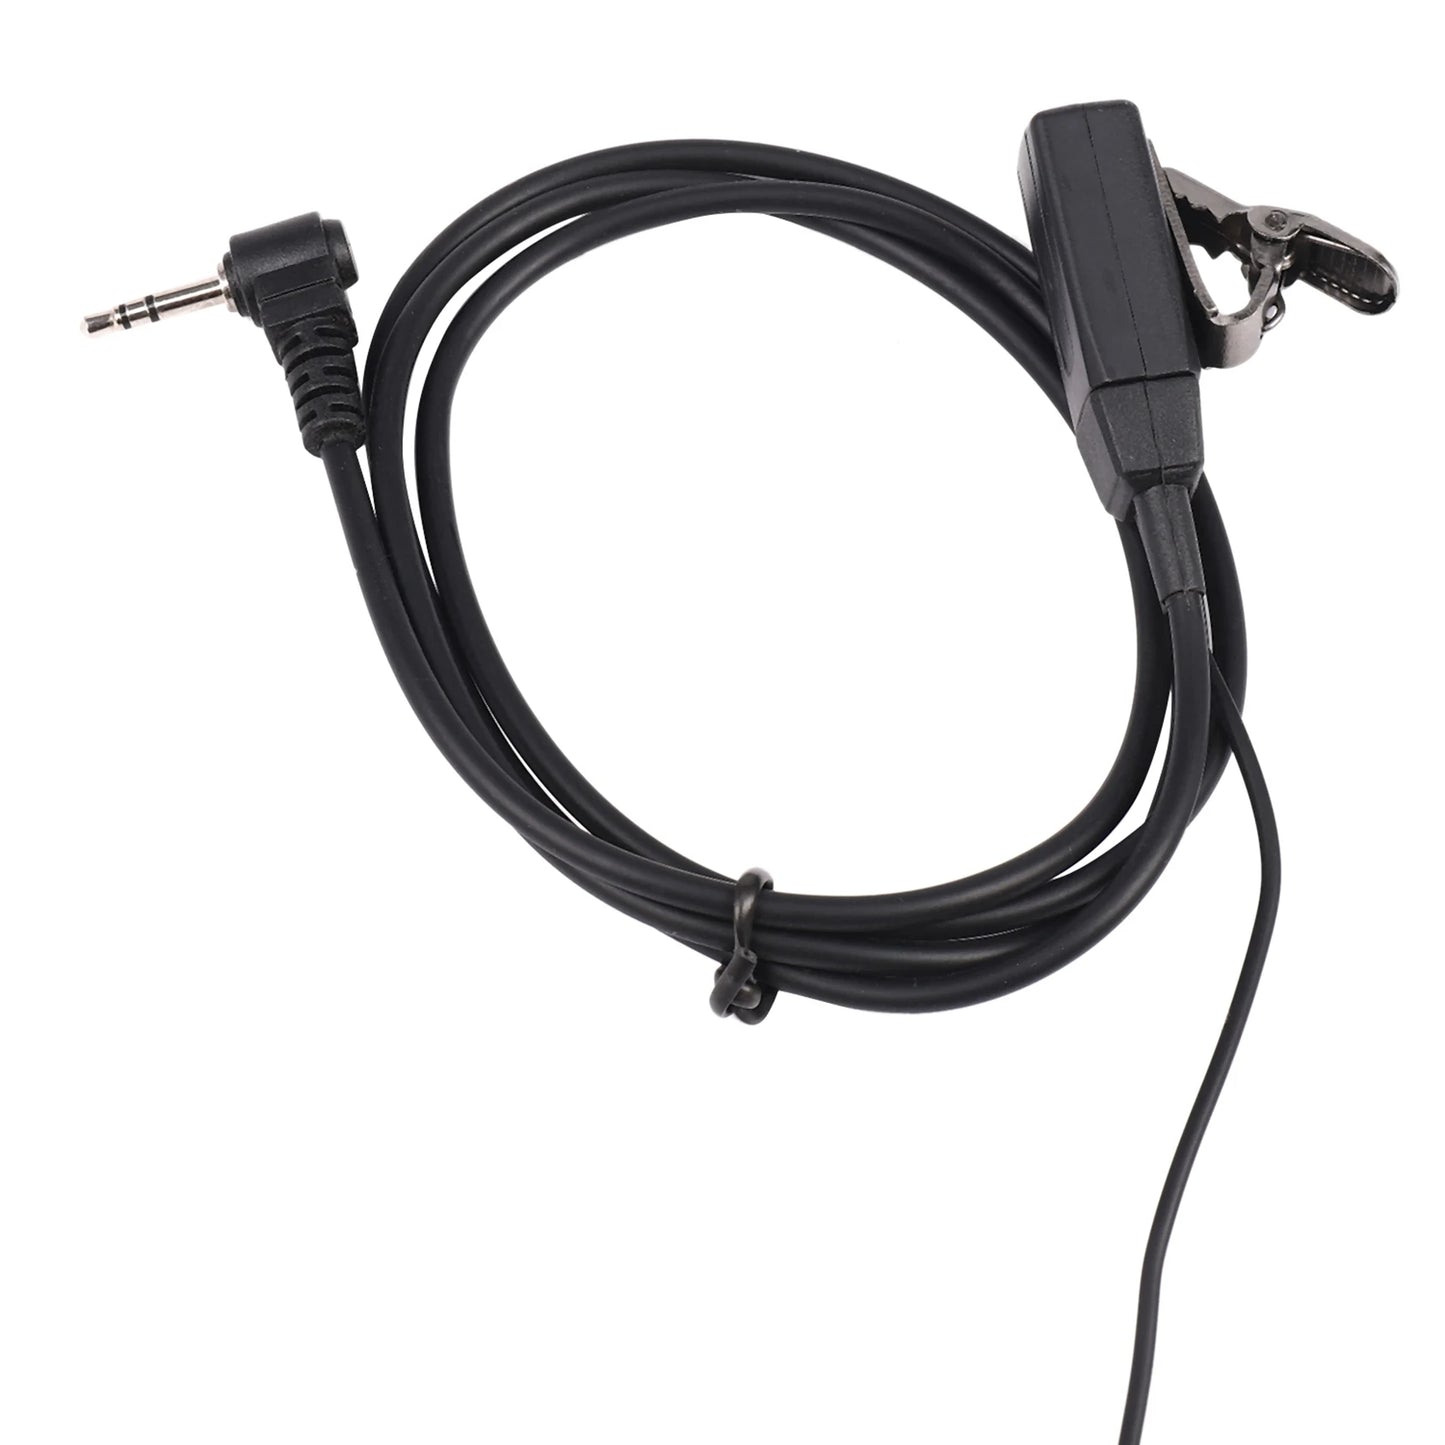 1 Pin D Type Headset Ear Hook Earphone PTT Mic Earpiece for Motorola Talkabout Portable Radio TLKR T3 T4 T60 T80 MR350R Walki